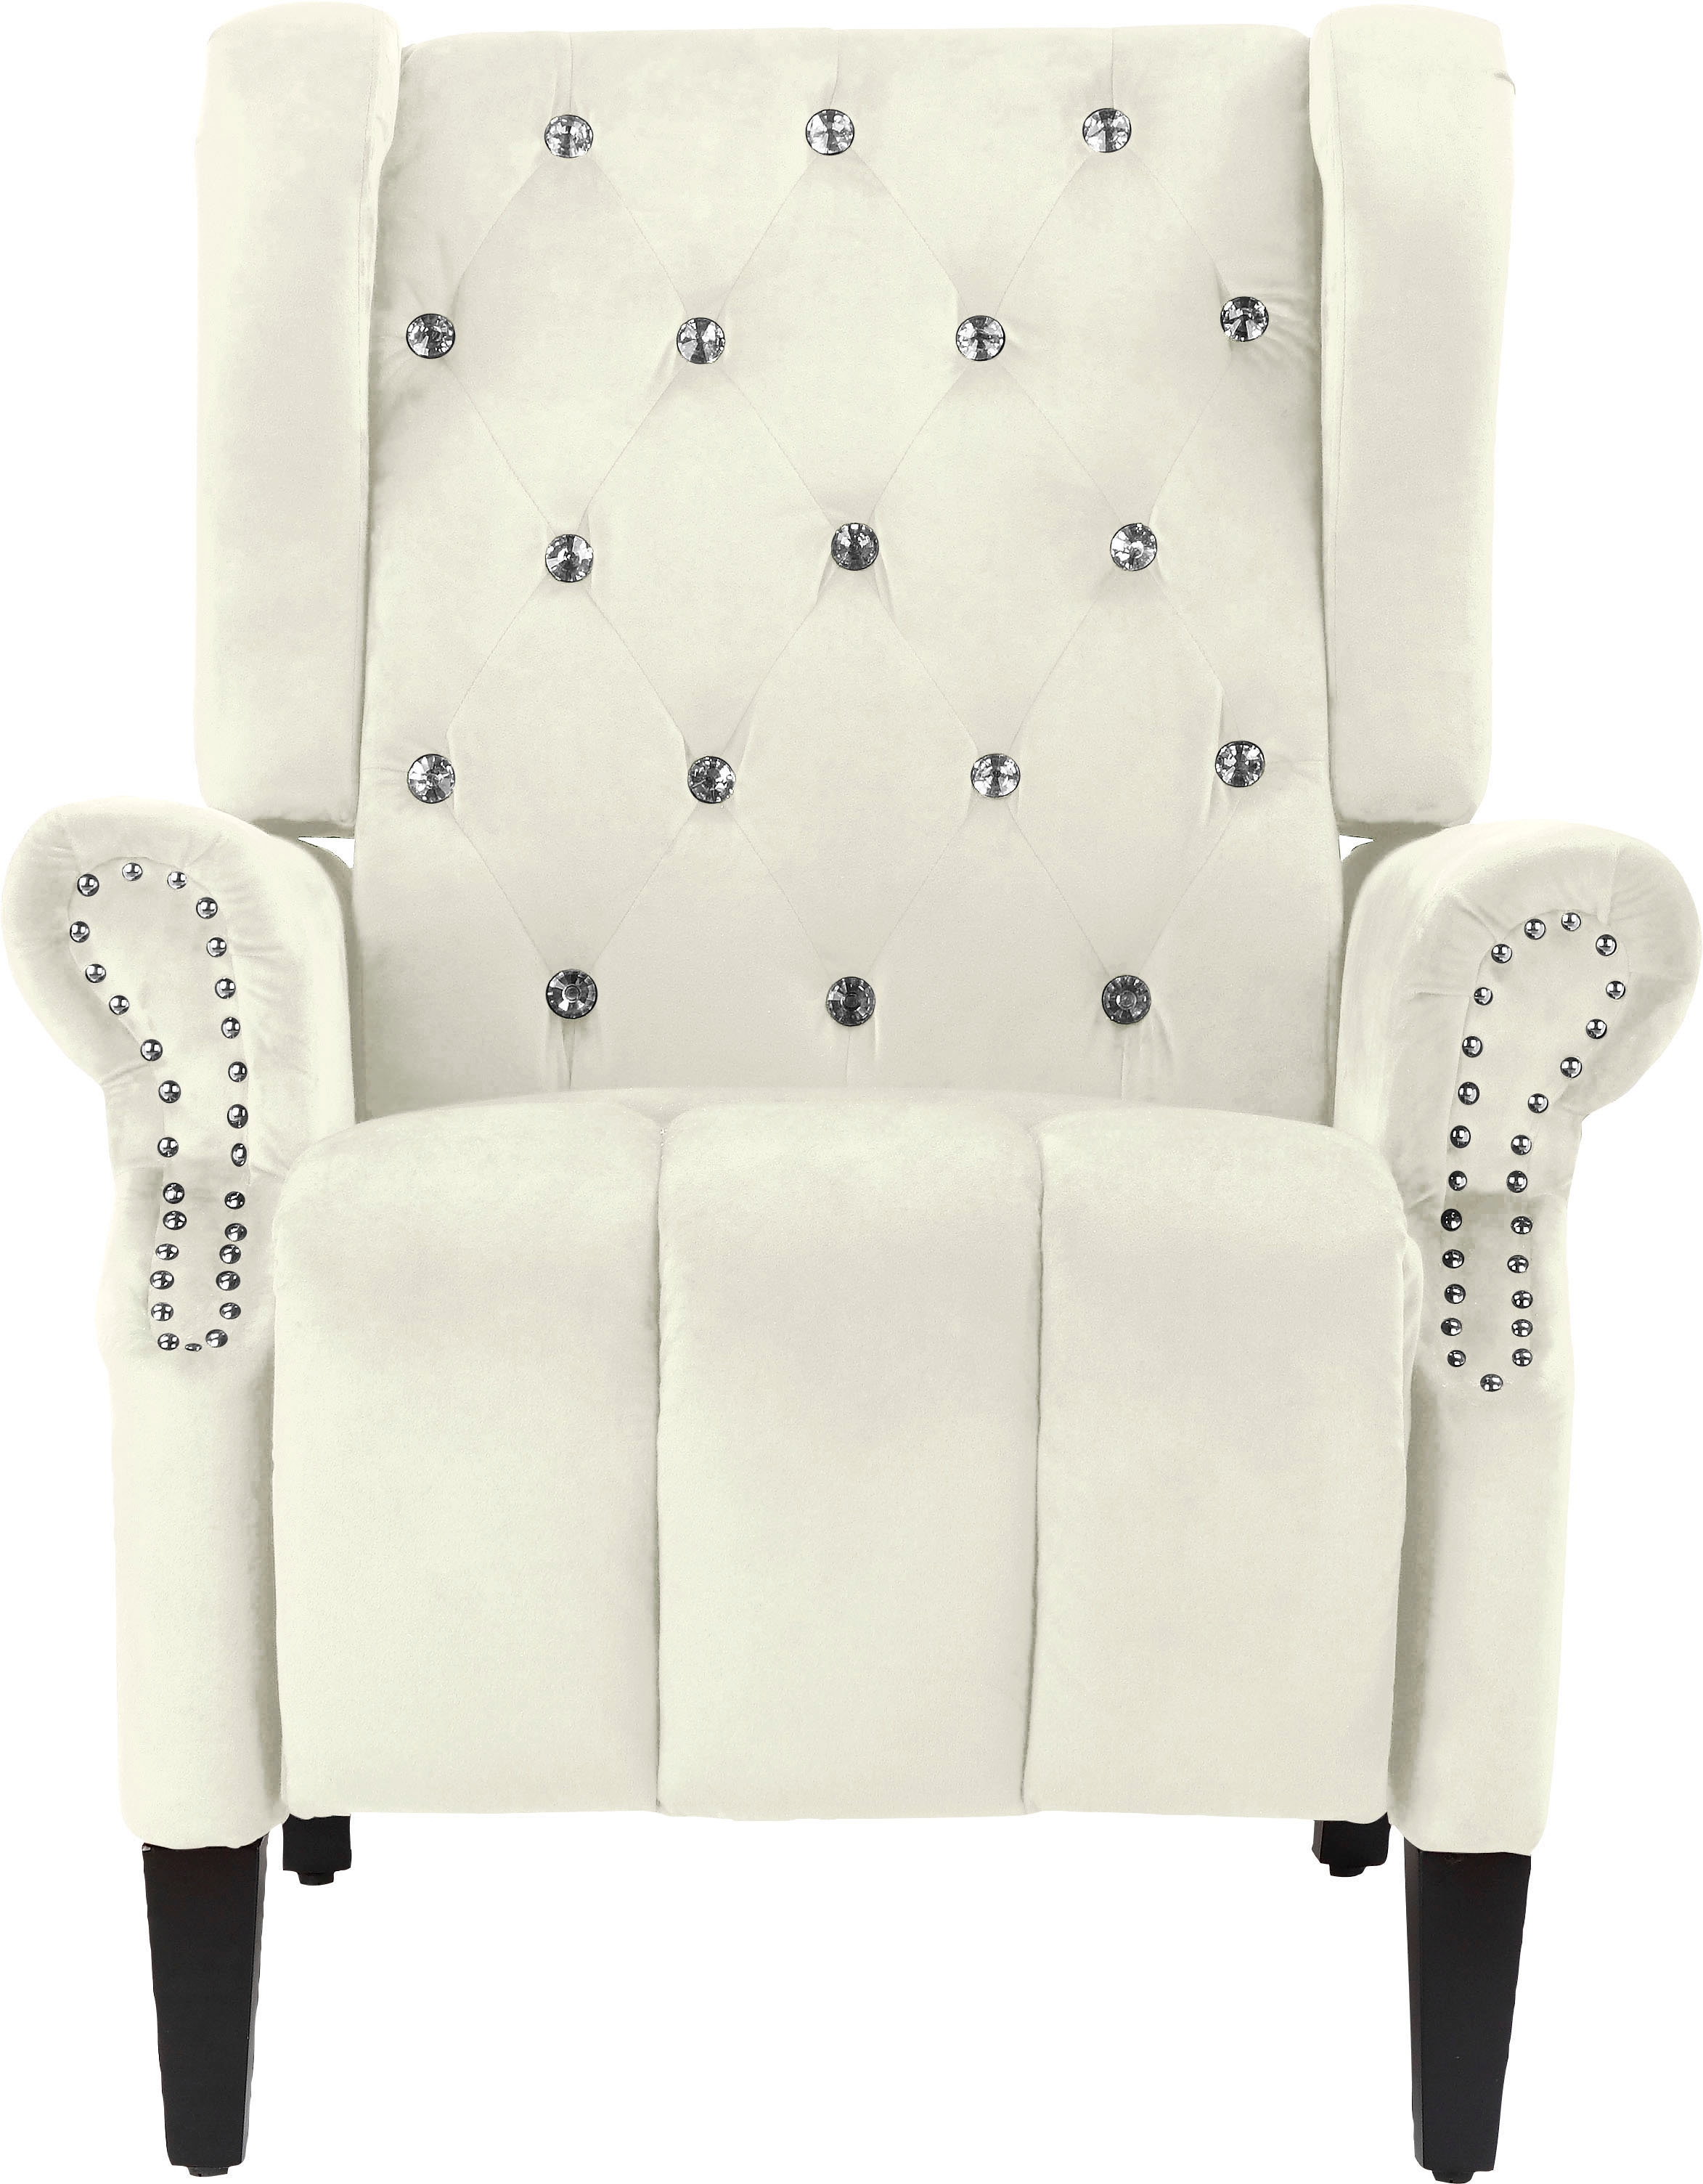 Leonique Relaxsessel »Childebert«, (1 St.), mit Verstellung, Sitz und Rücken gepolstert, Sitzhöhe 49,5 cm